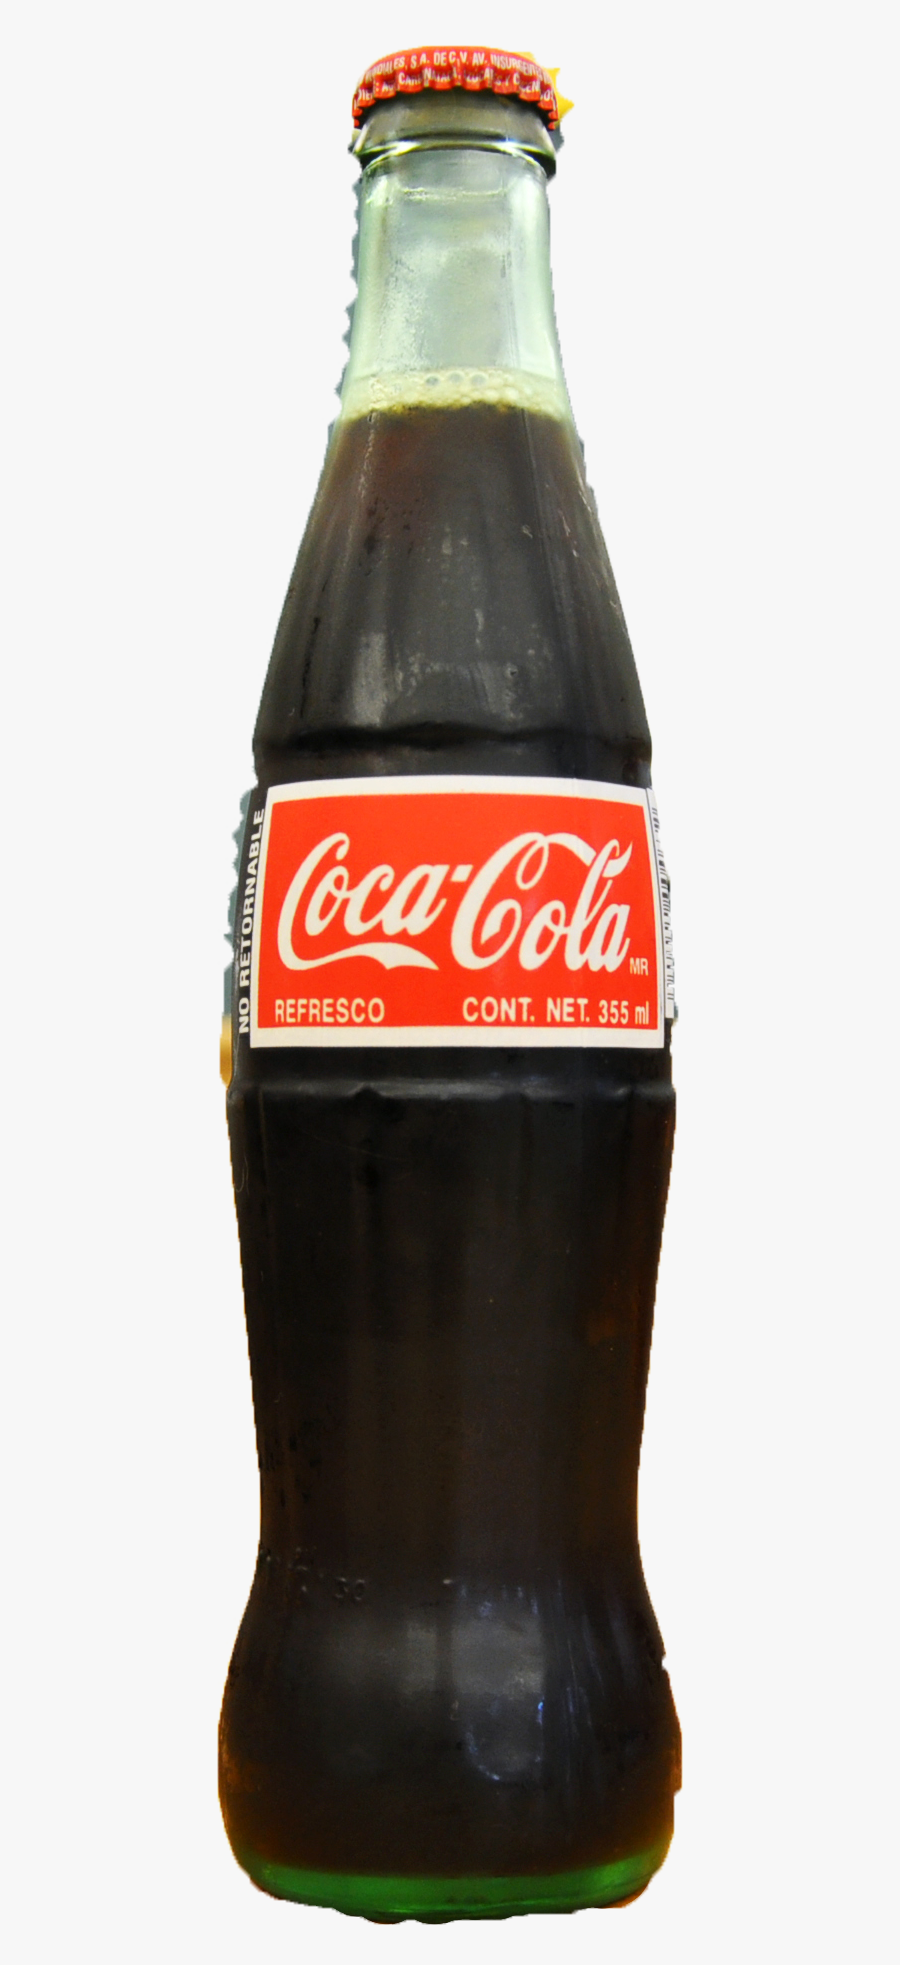 Coca Cola Bottle .png, Transparent Clipart